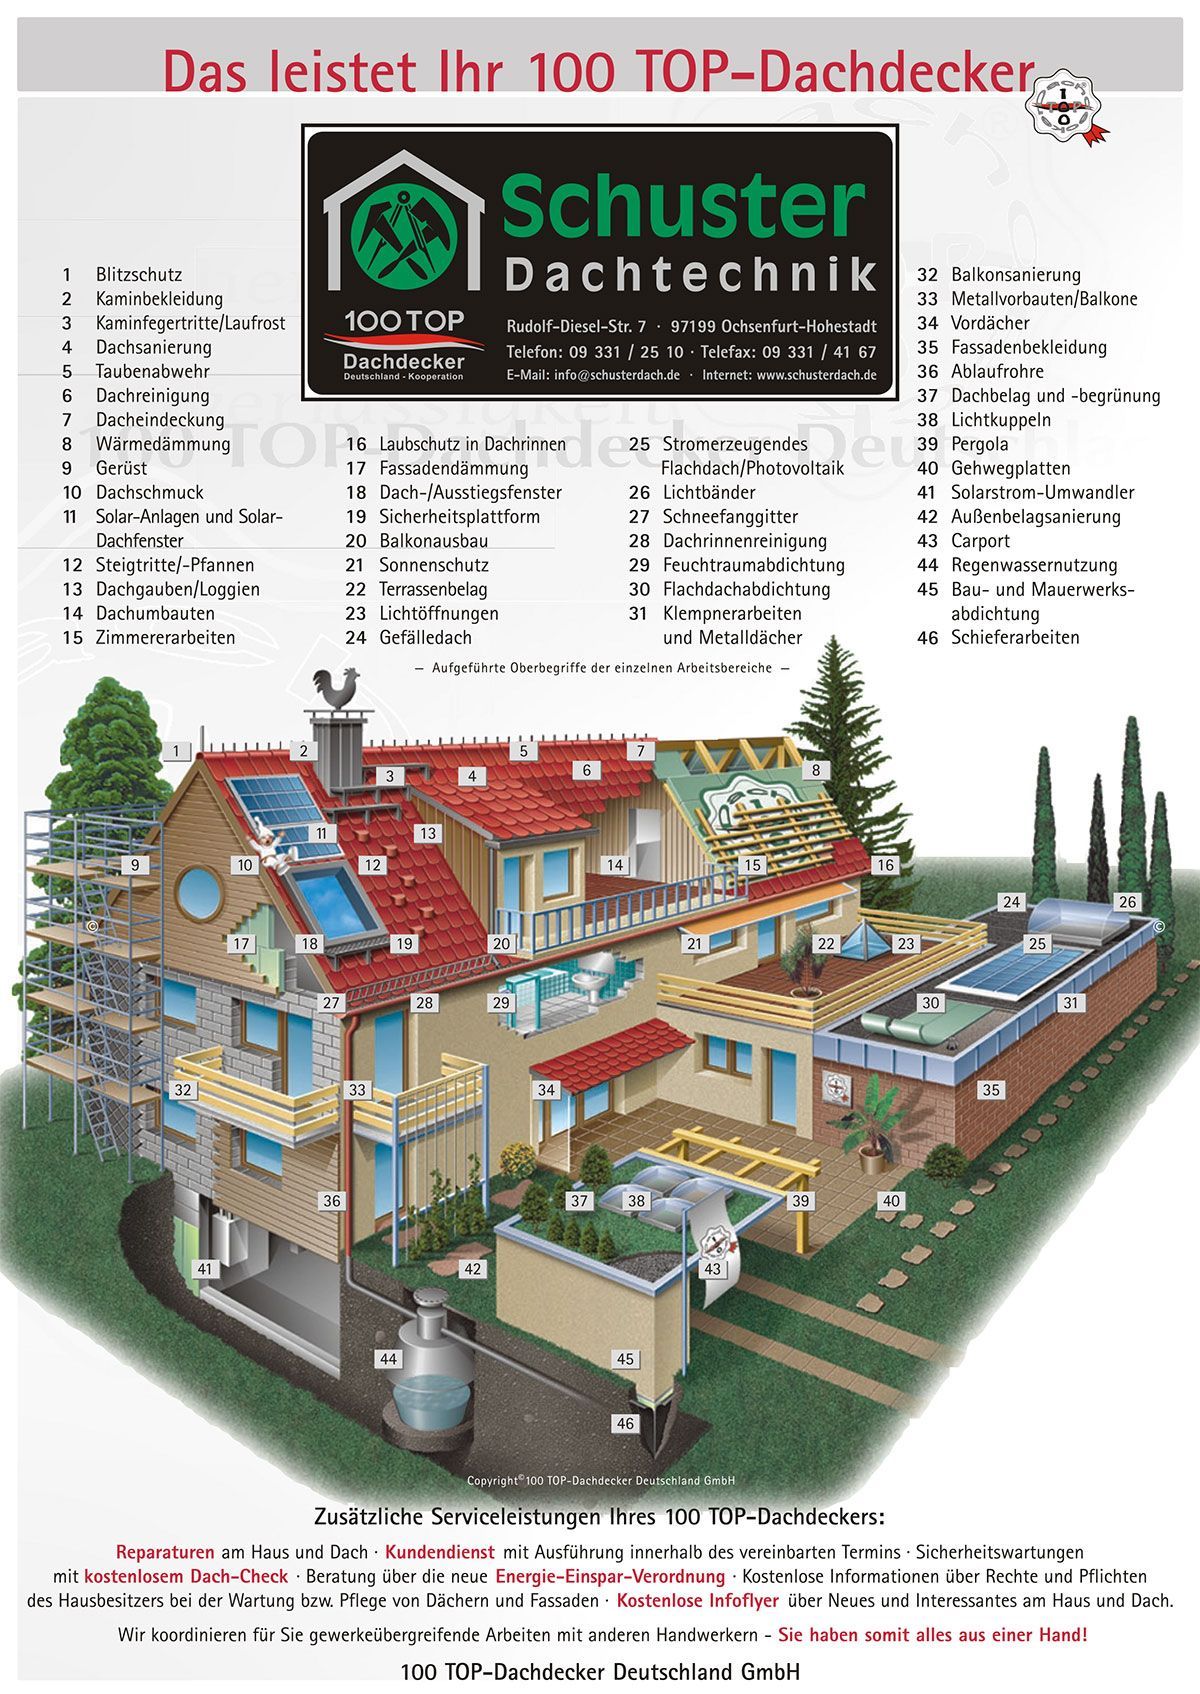 Schuster Dachtechnik GmbH Ochsenfurt